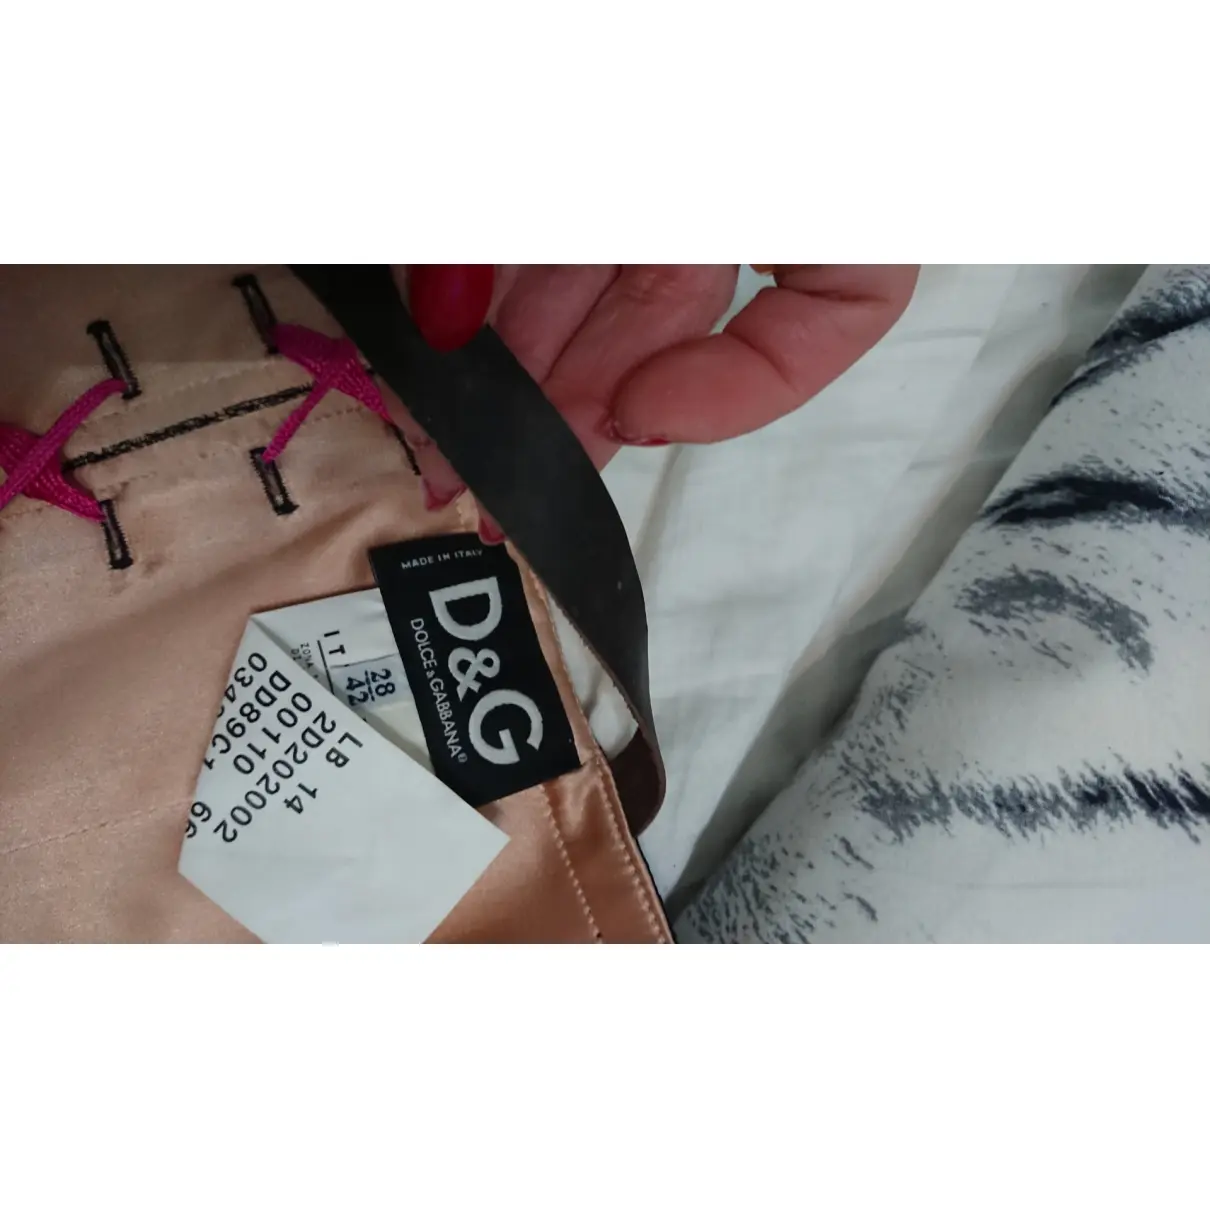 Buy D&G Lace corset online